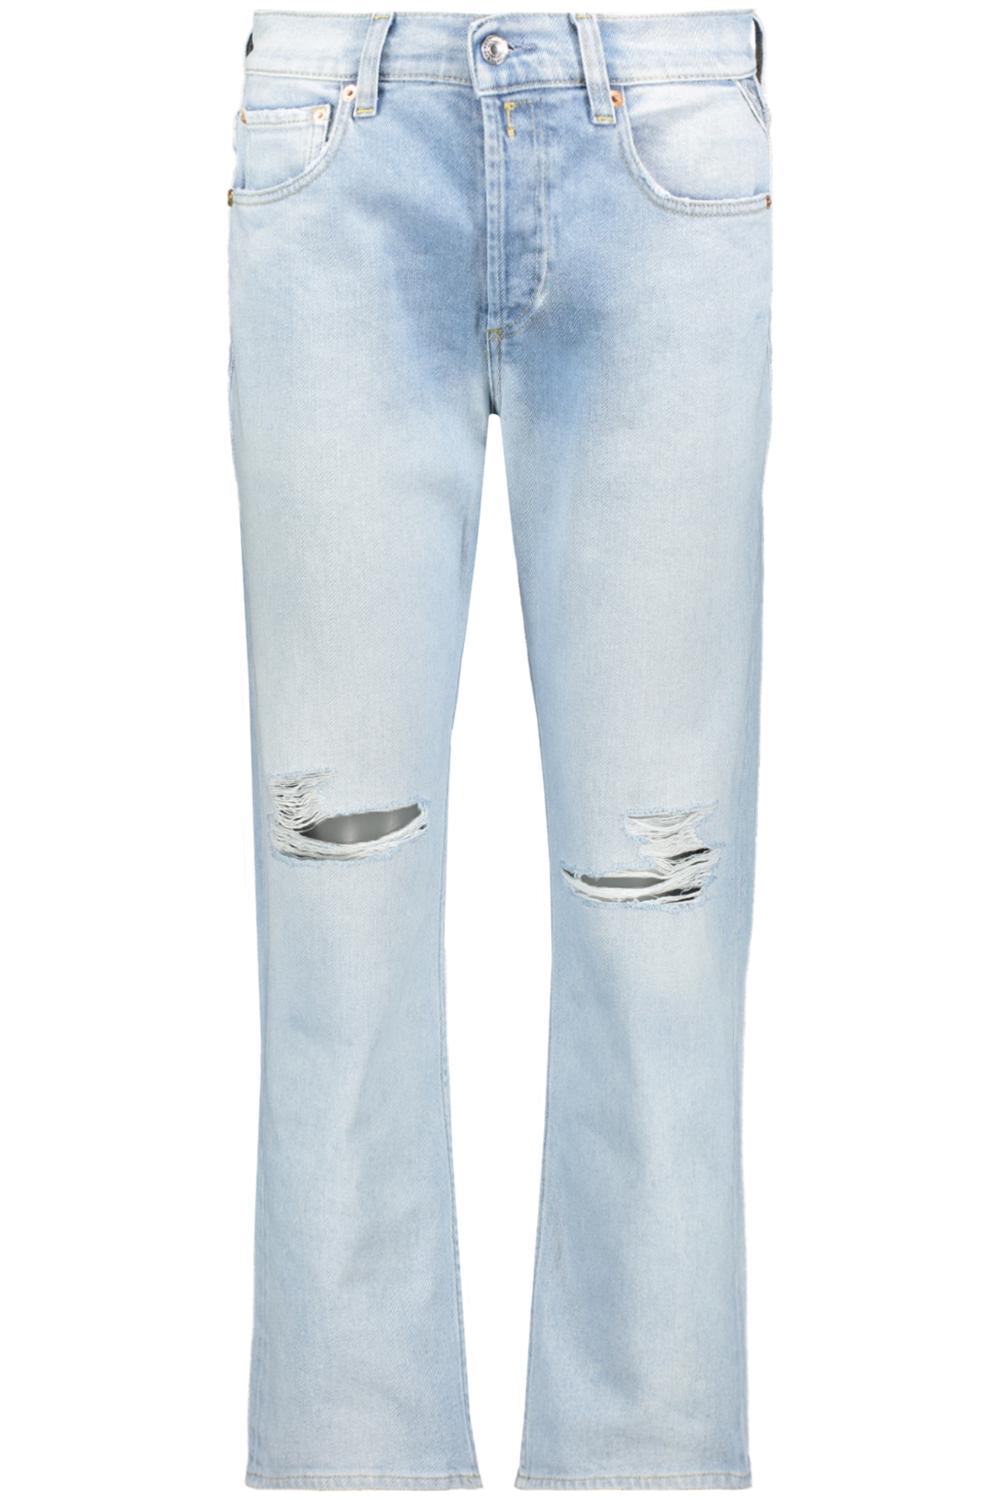 bubbel voetstuk Tegenslag Schots Haan Kangoeroe replay jeans maat 27 Aangenaam kennis te maken Arena  Merchandising